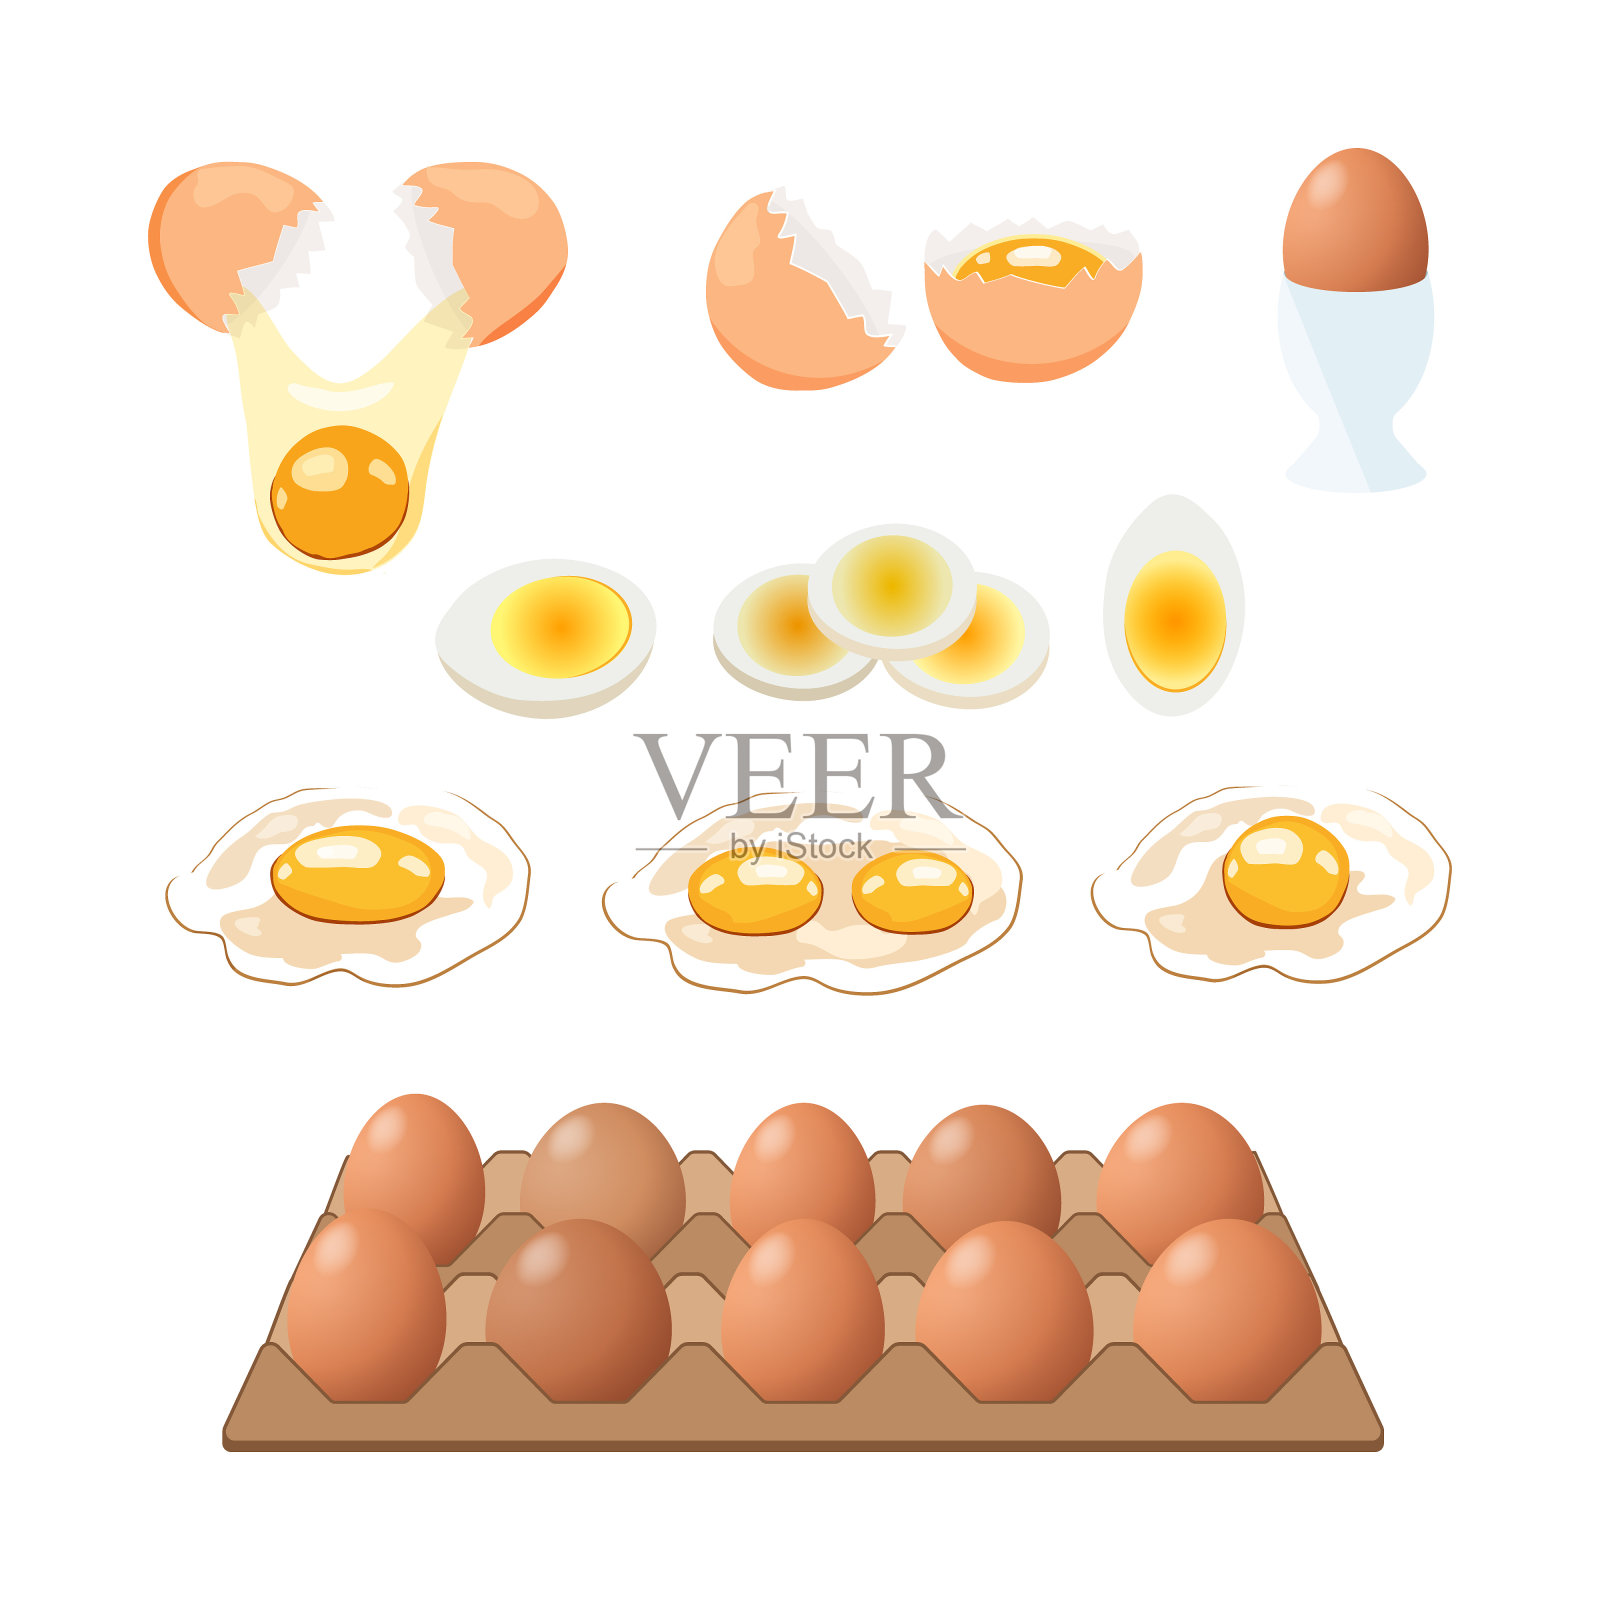 煎蛋。快餐。做午餐、晚餐或早餐。自然的产品。煮熟的煎蛋卷。插画图片素材